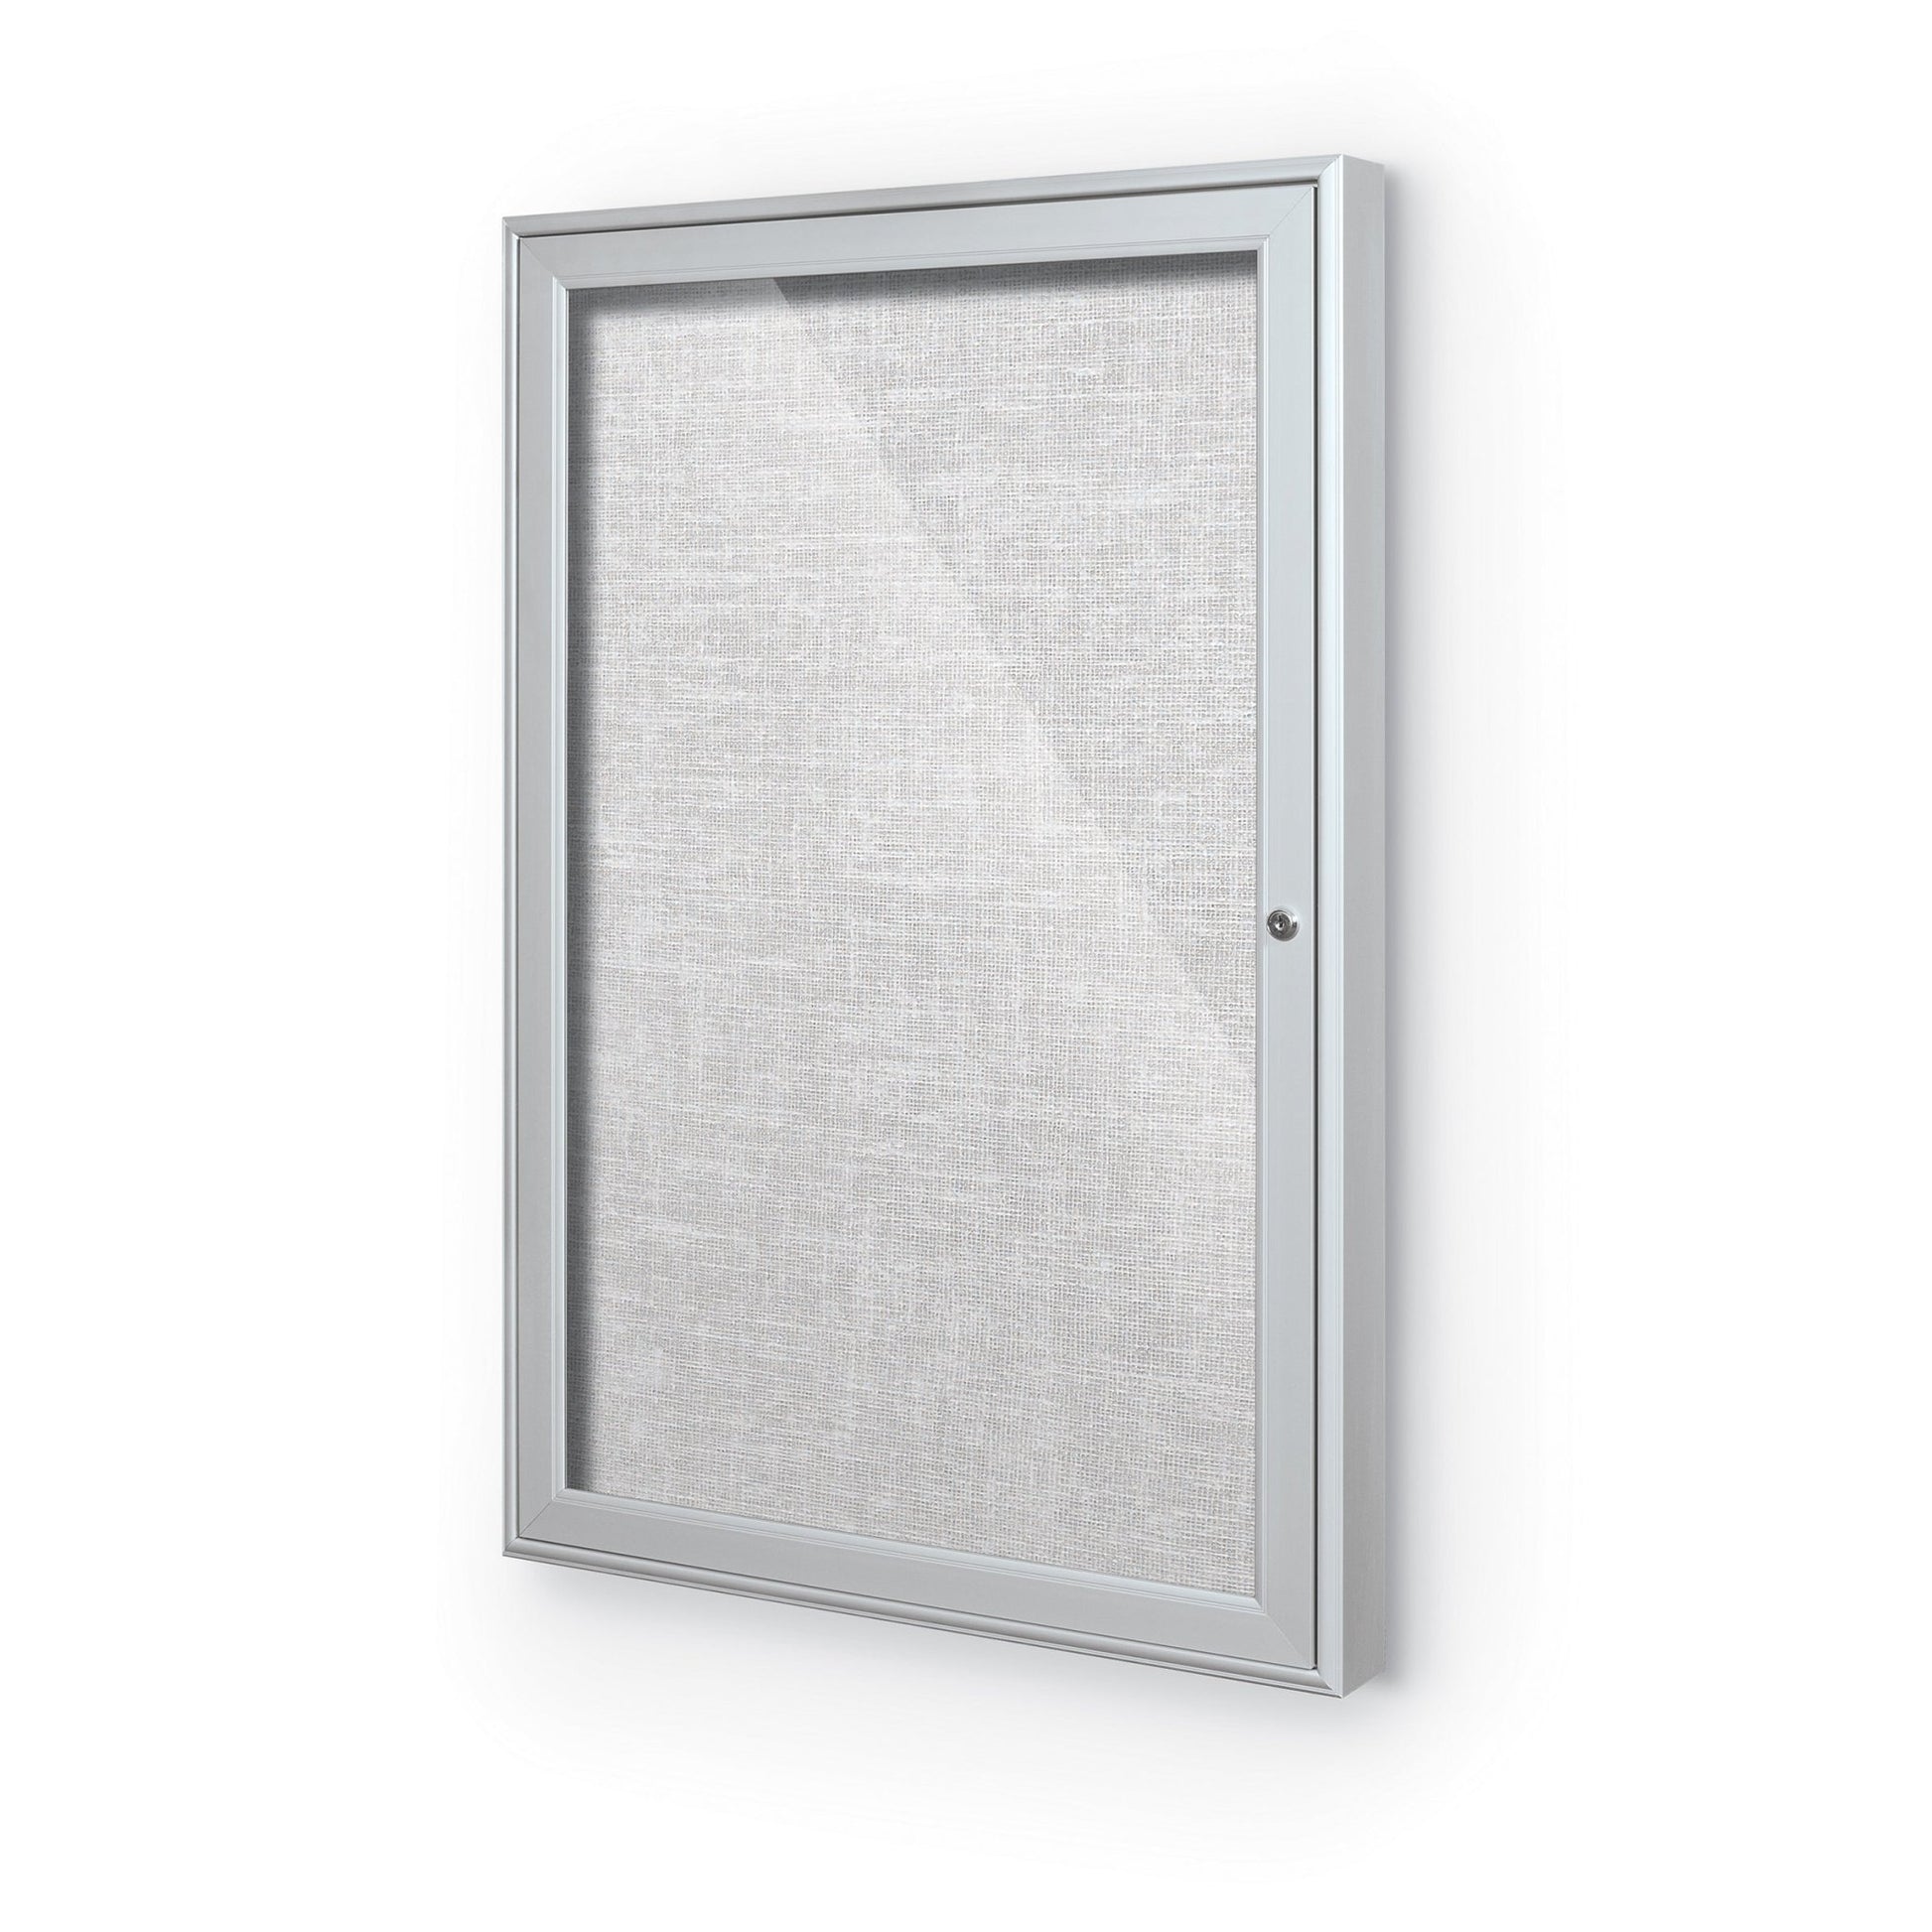 Mooreco Outdoor Enclosed Bulletin Board Cabinet - 1, 2 or 3 Door Silver Aluminum Trim - SchoolOutlet